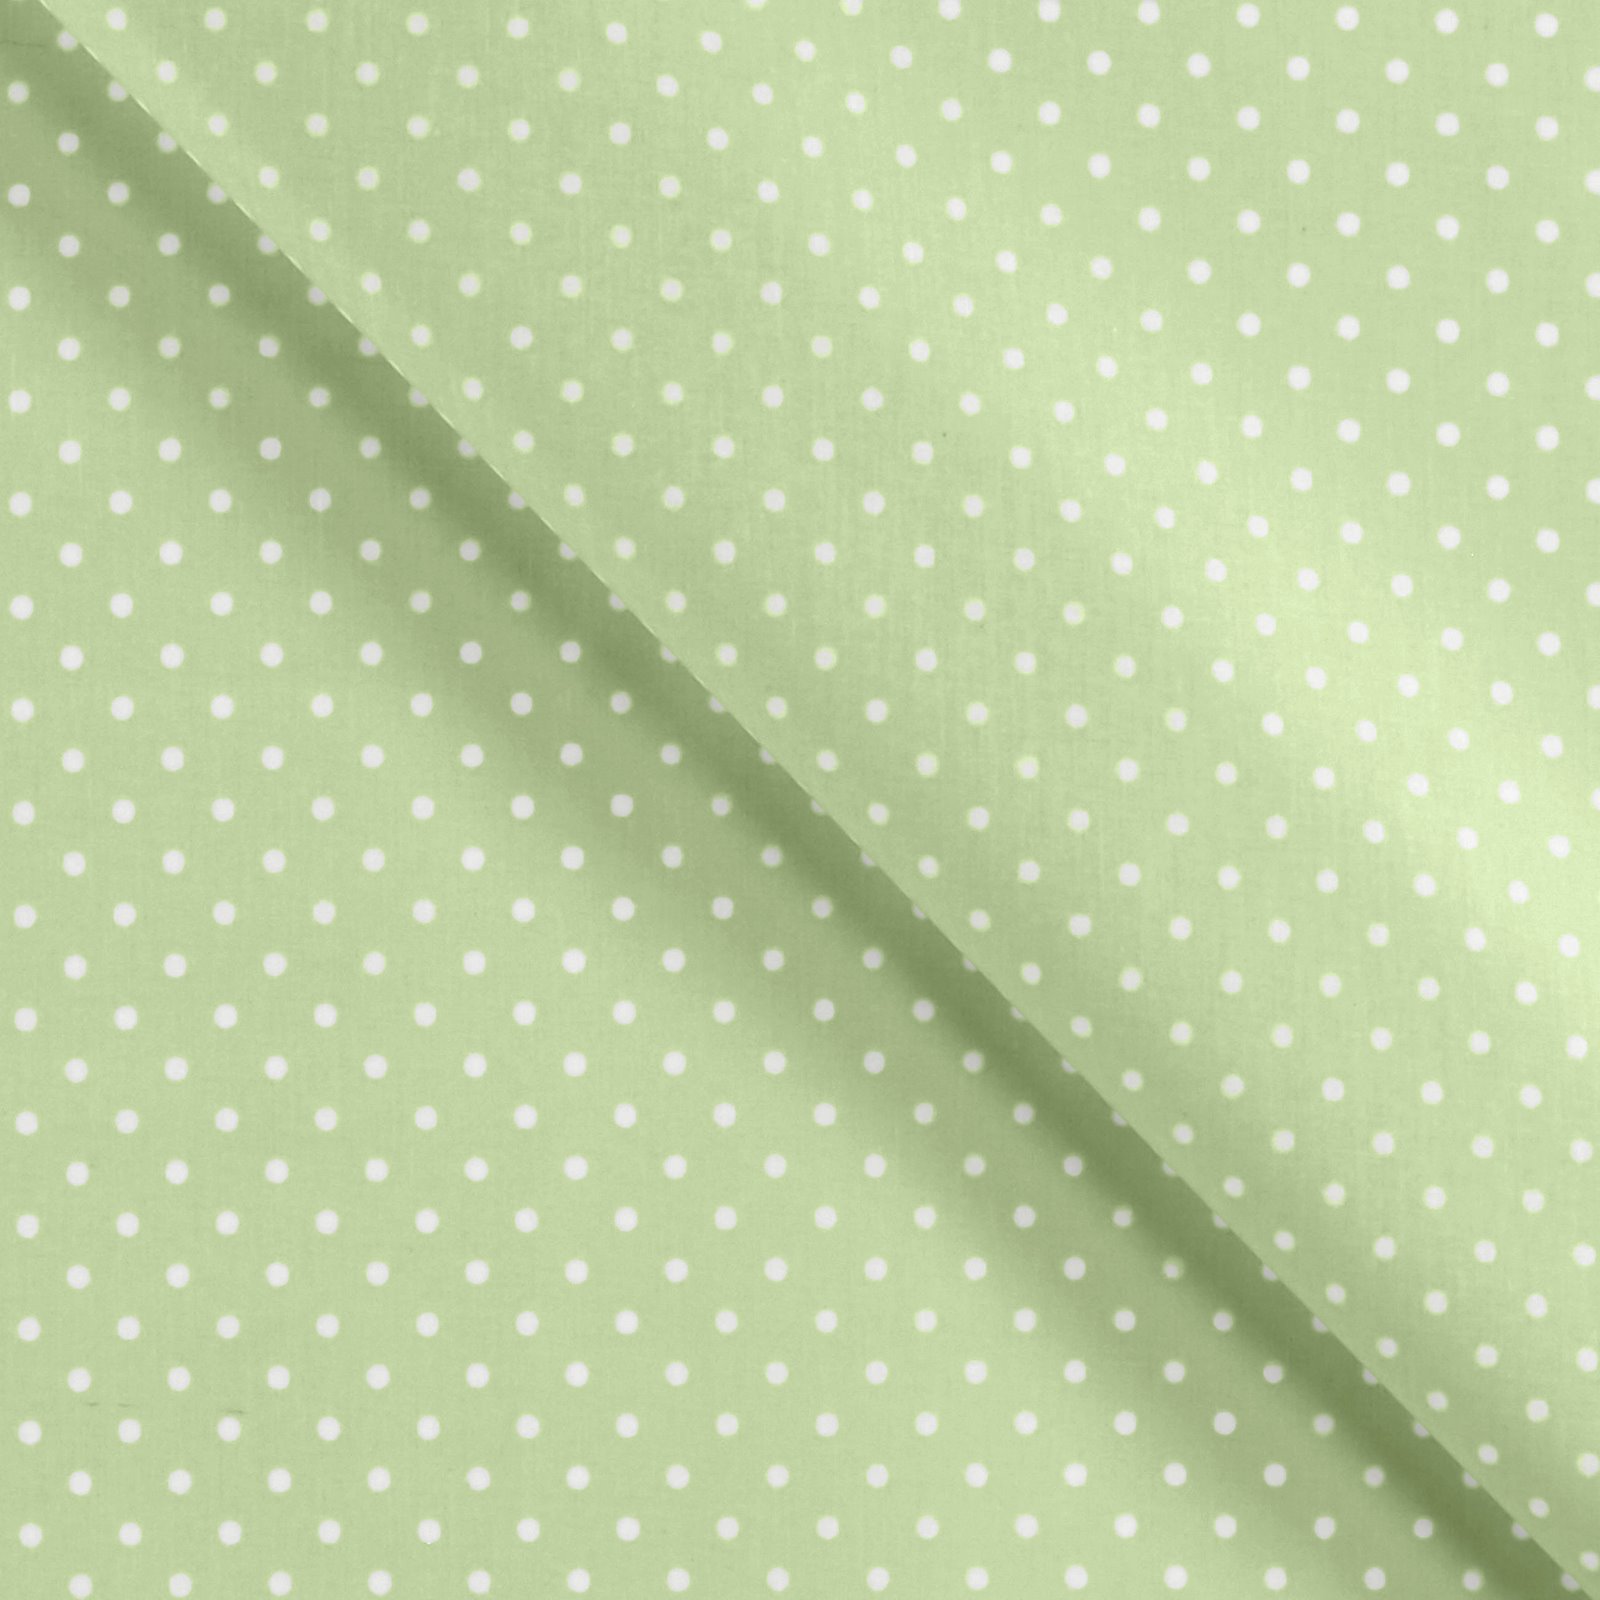 Tekstilvoksdug lys grøn m hvide prikker 861508_pack